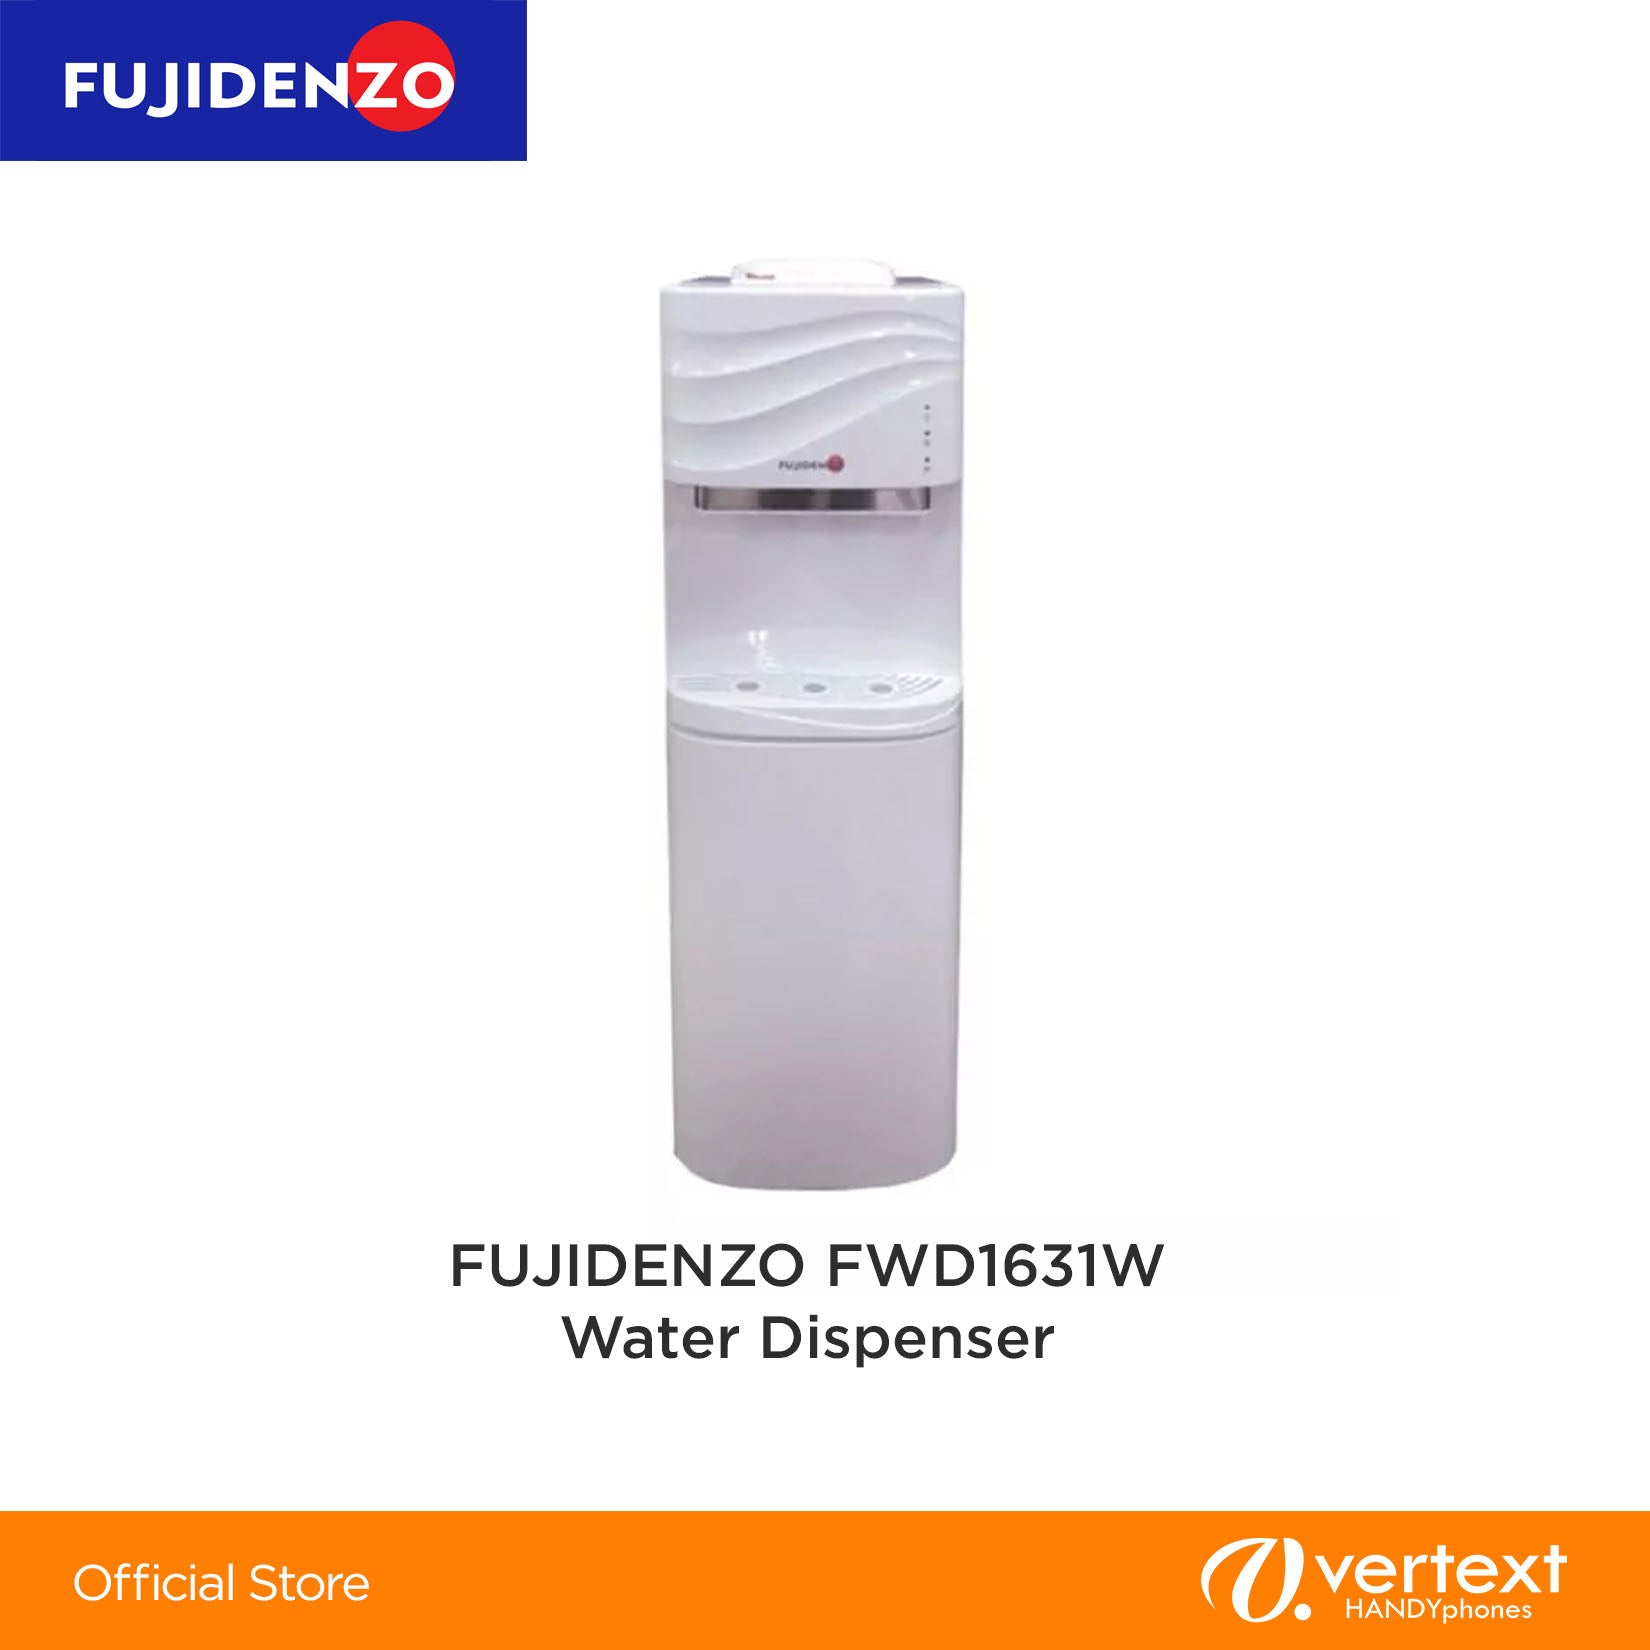 Fujidenzo FWD1631W